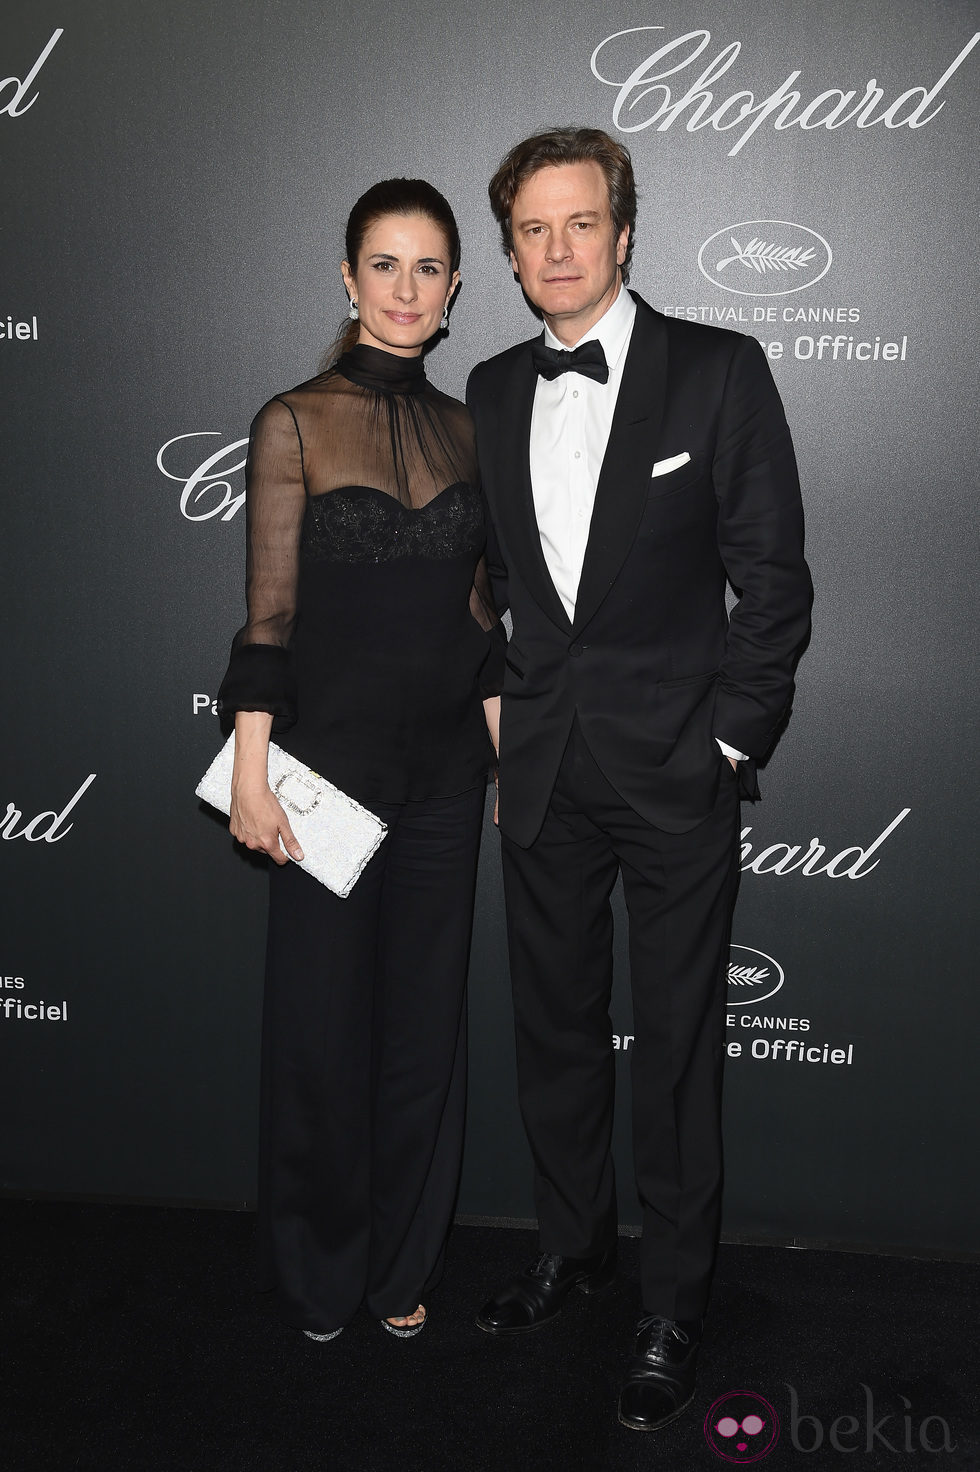 Colin Firth y su mujer Livia en la fiesta Chopard del Festival de Cannes 2014